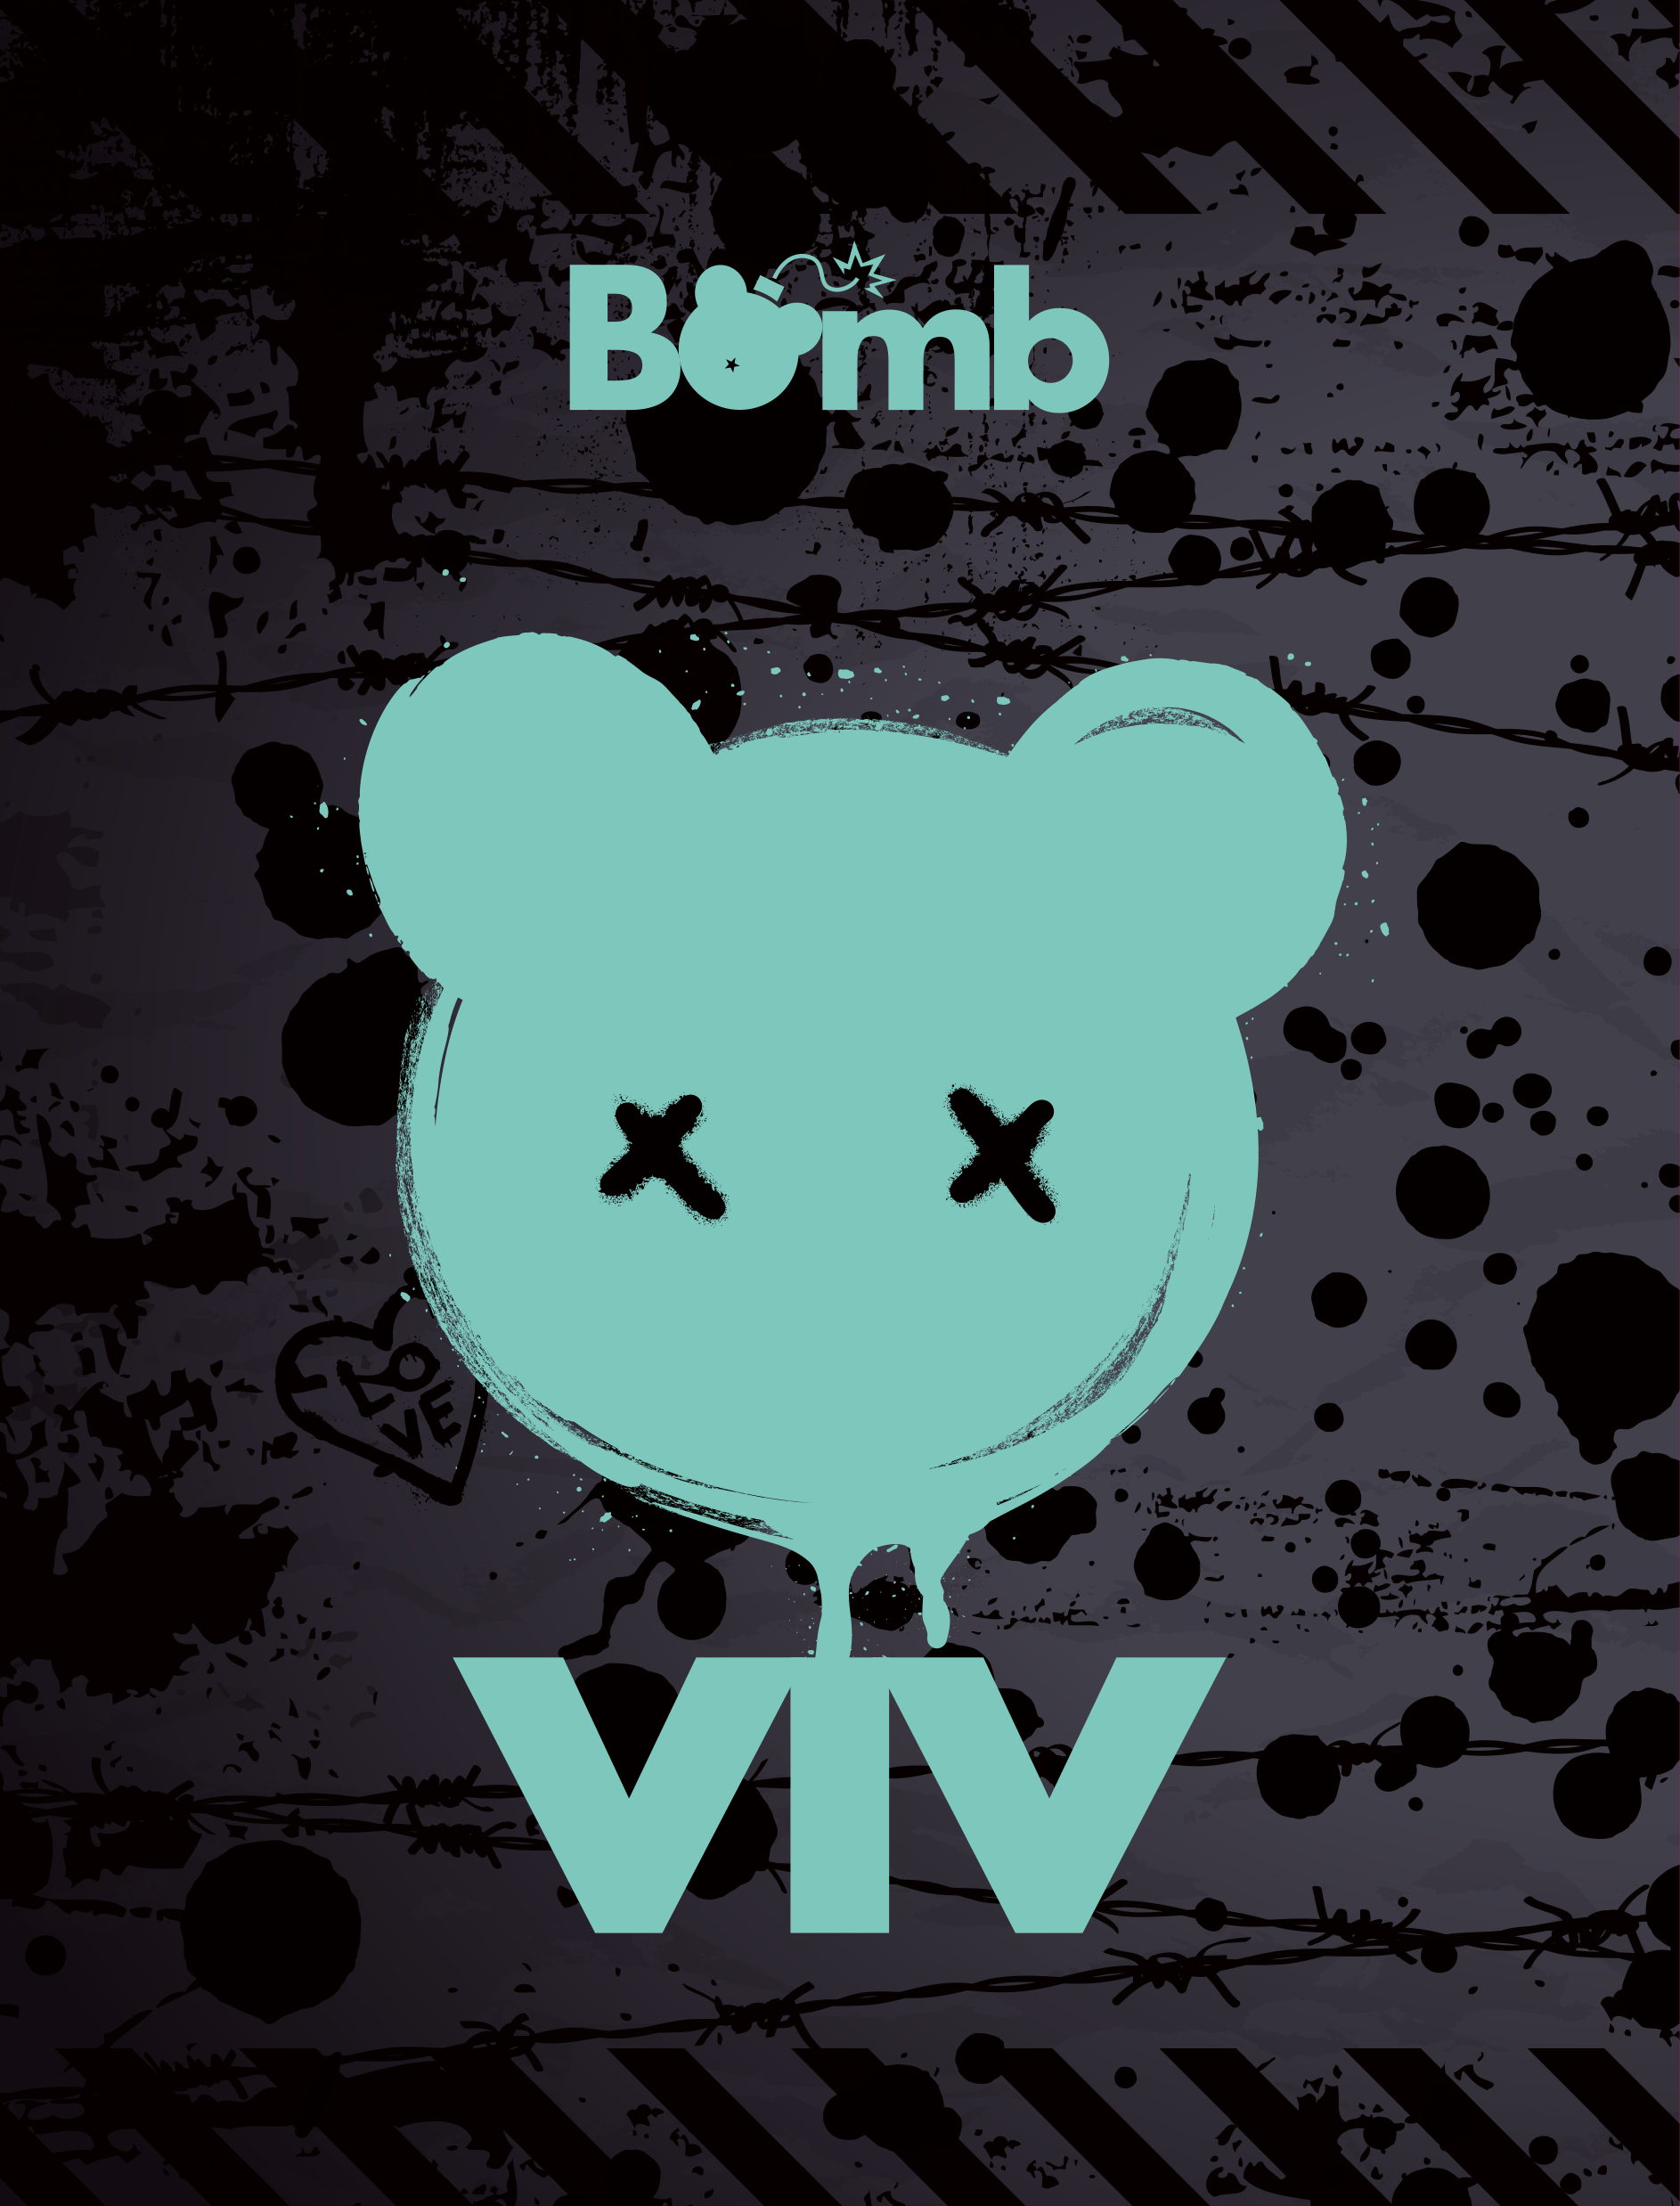 ViV - DEBUT 1ST EP [Bomb] - KPOPHERO